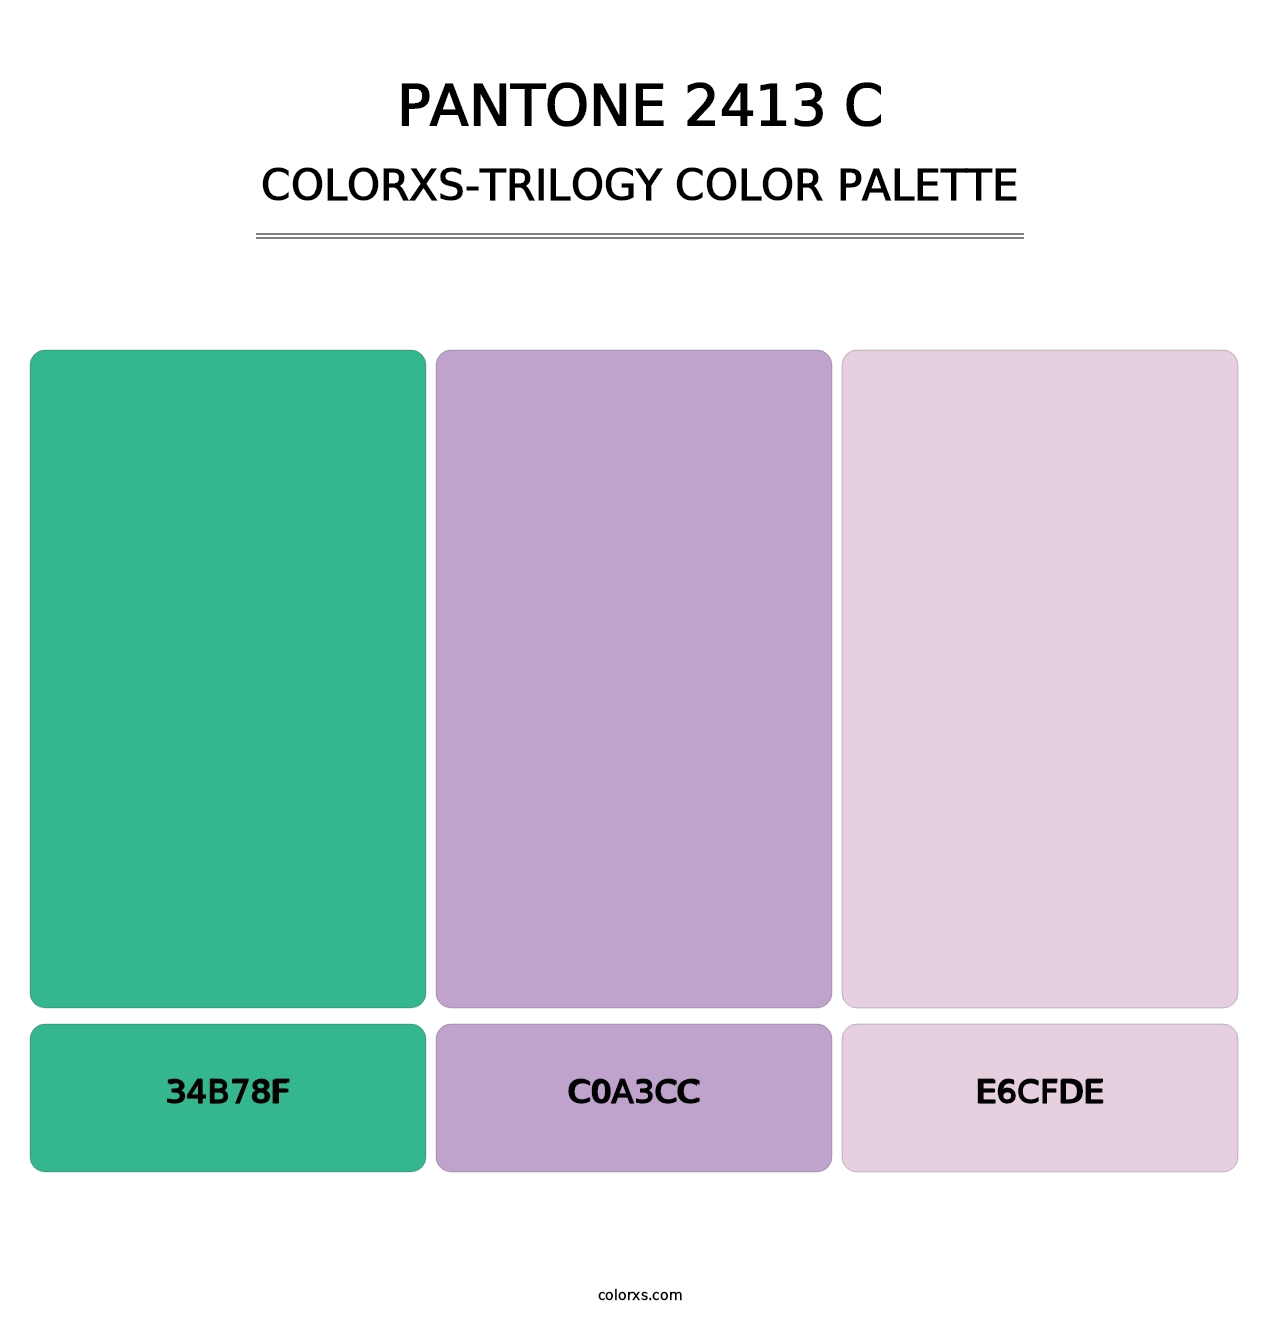 PANTONE 2413 C - Colorxs Trilogy Palette